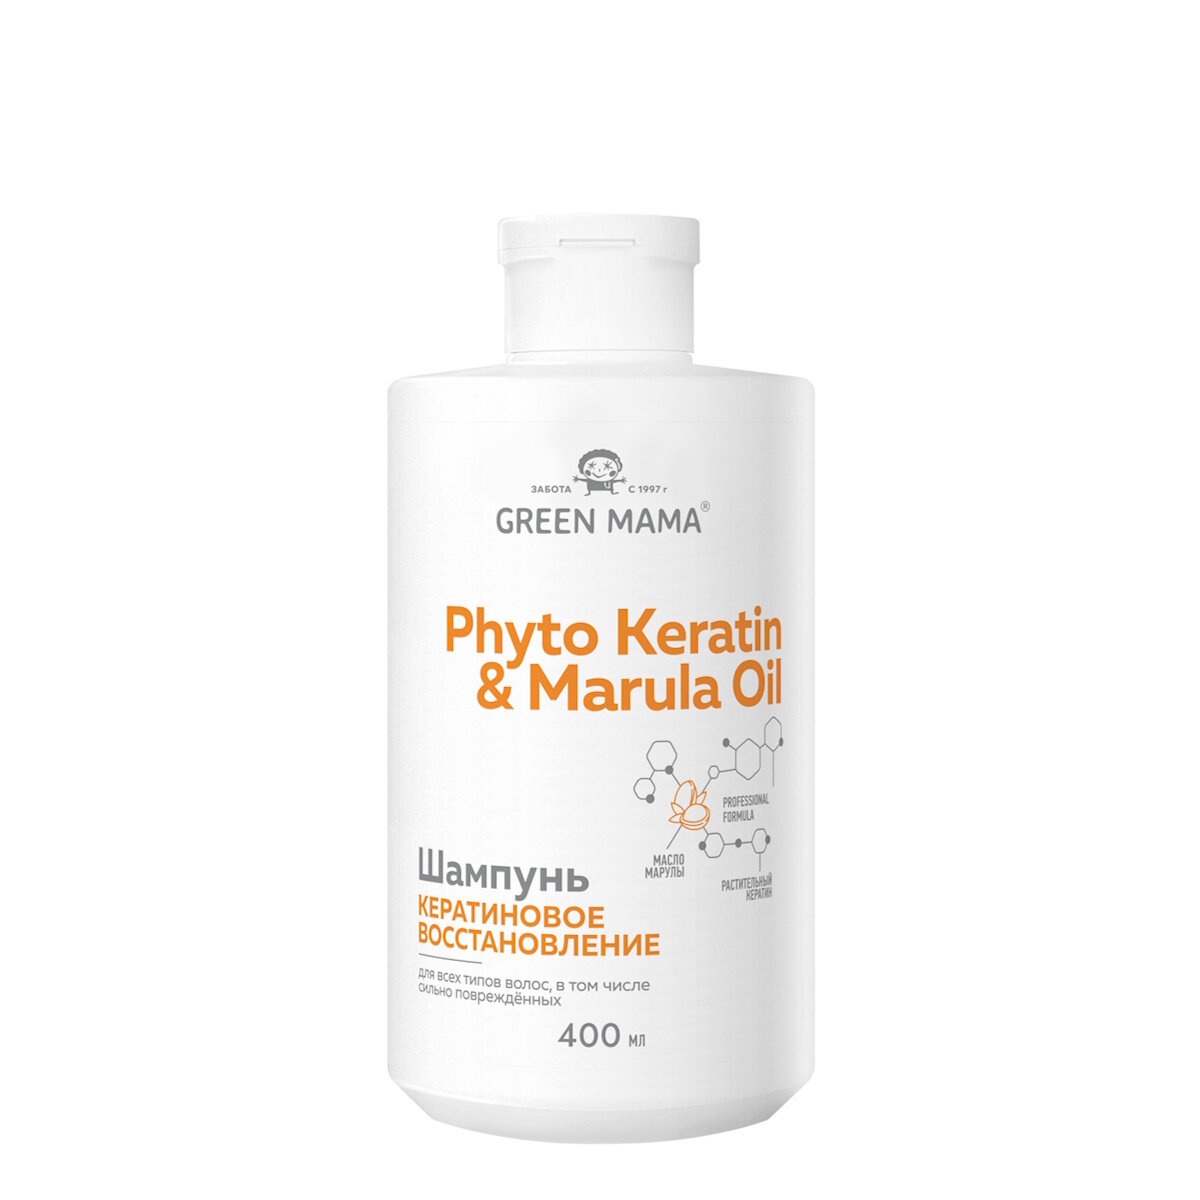 Шампунь PHYTO KERATIN & MARULA OIL для восстановления волос GREEN MAMA с маслом марулы 400 мл